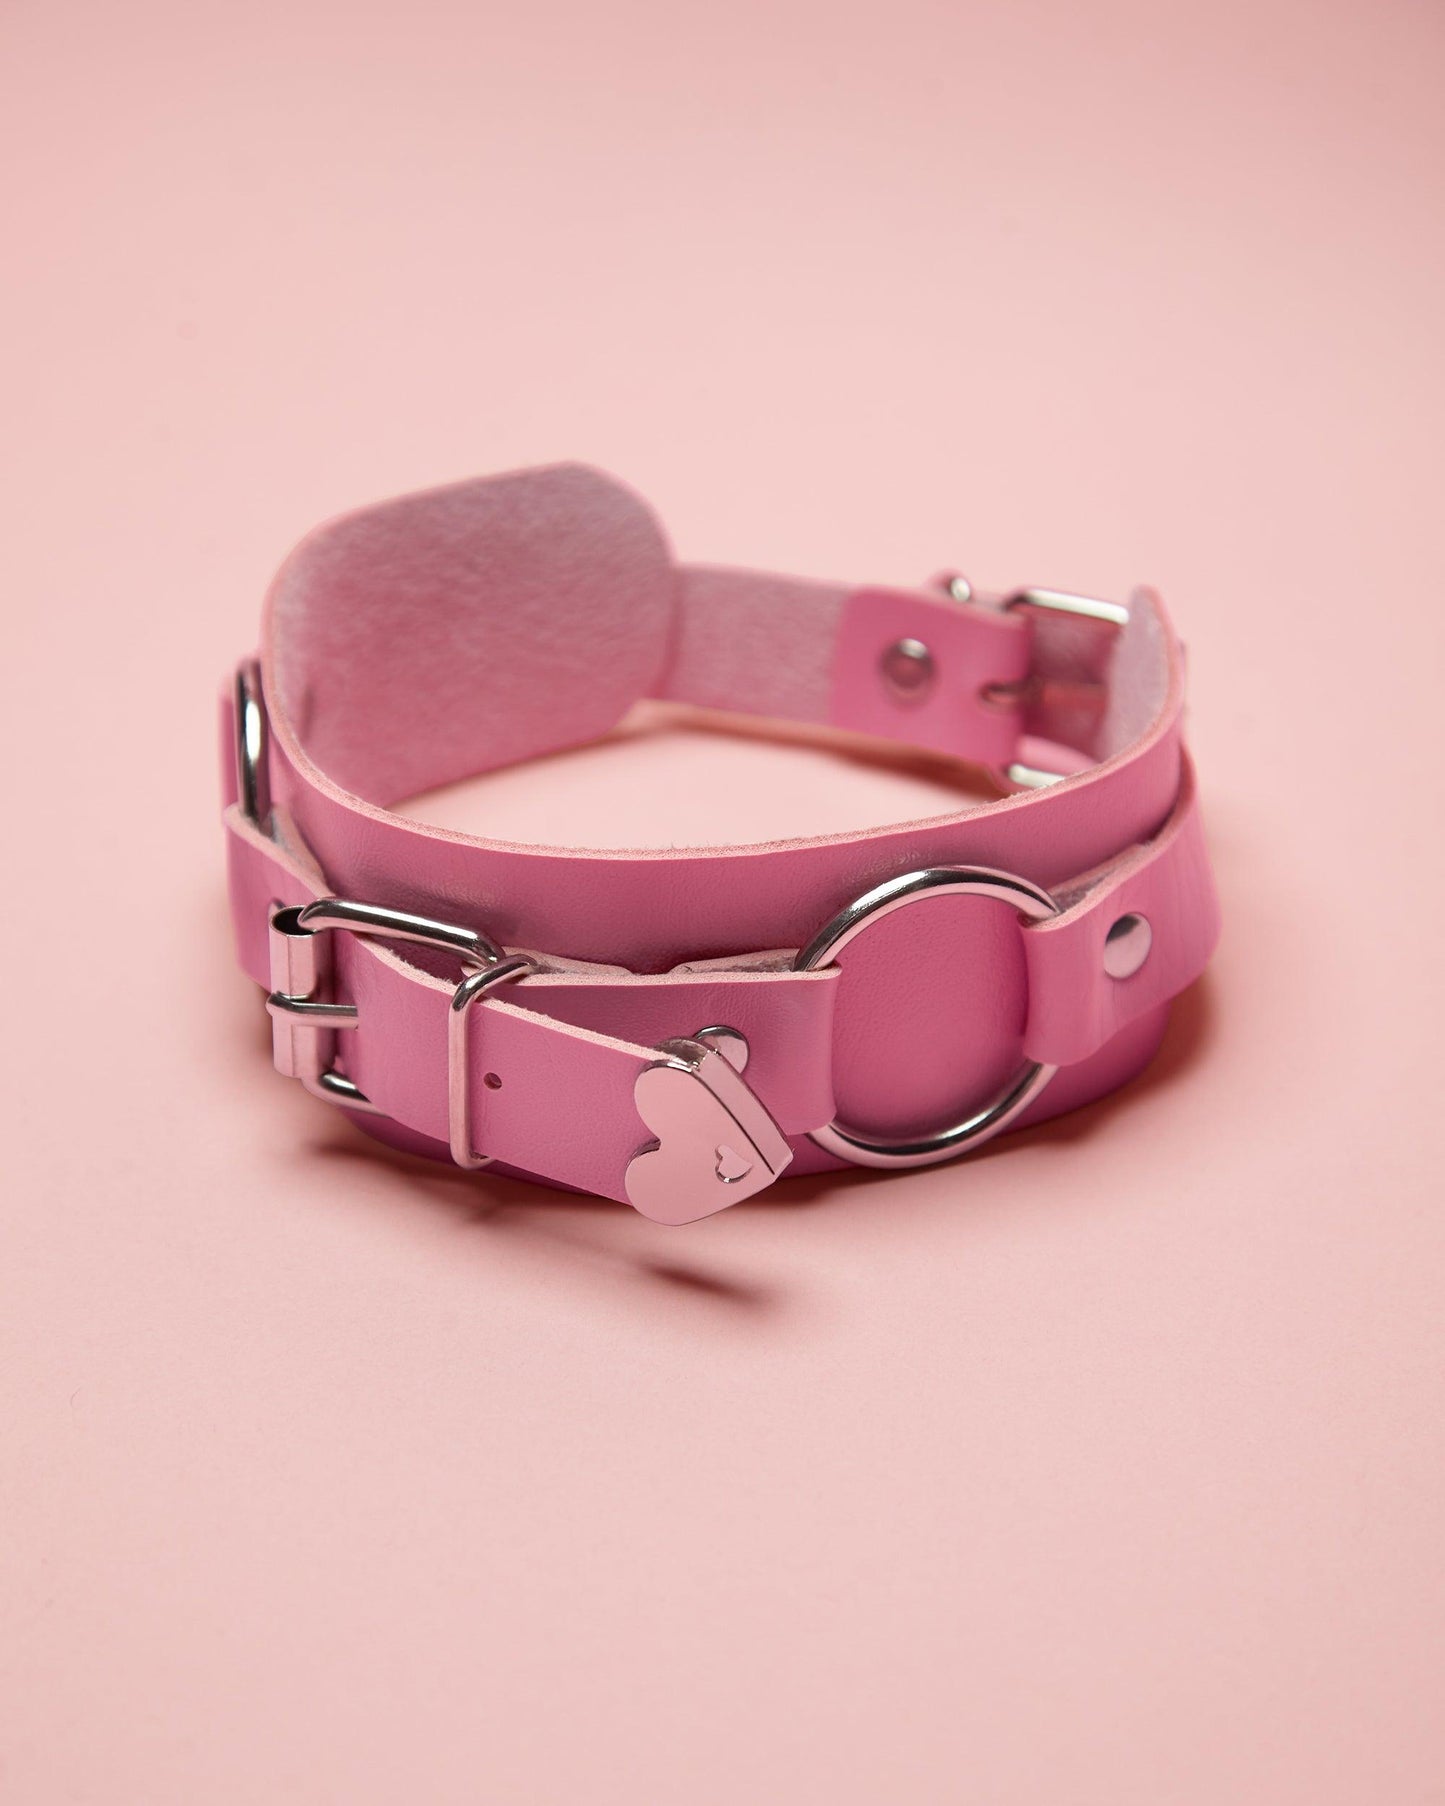 💕 Pink love heart, anime inspired choker 💕